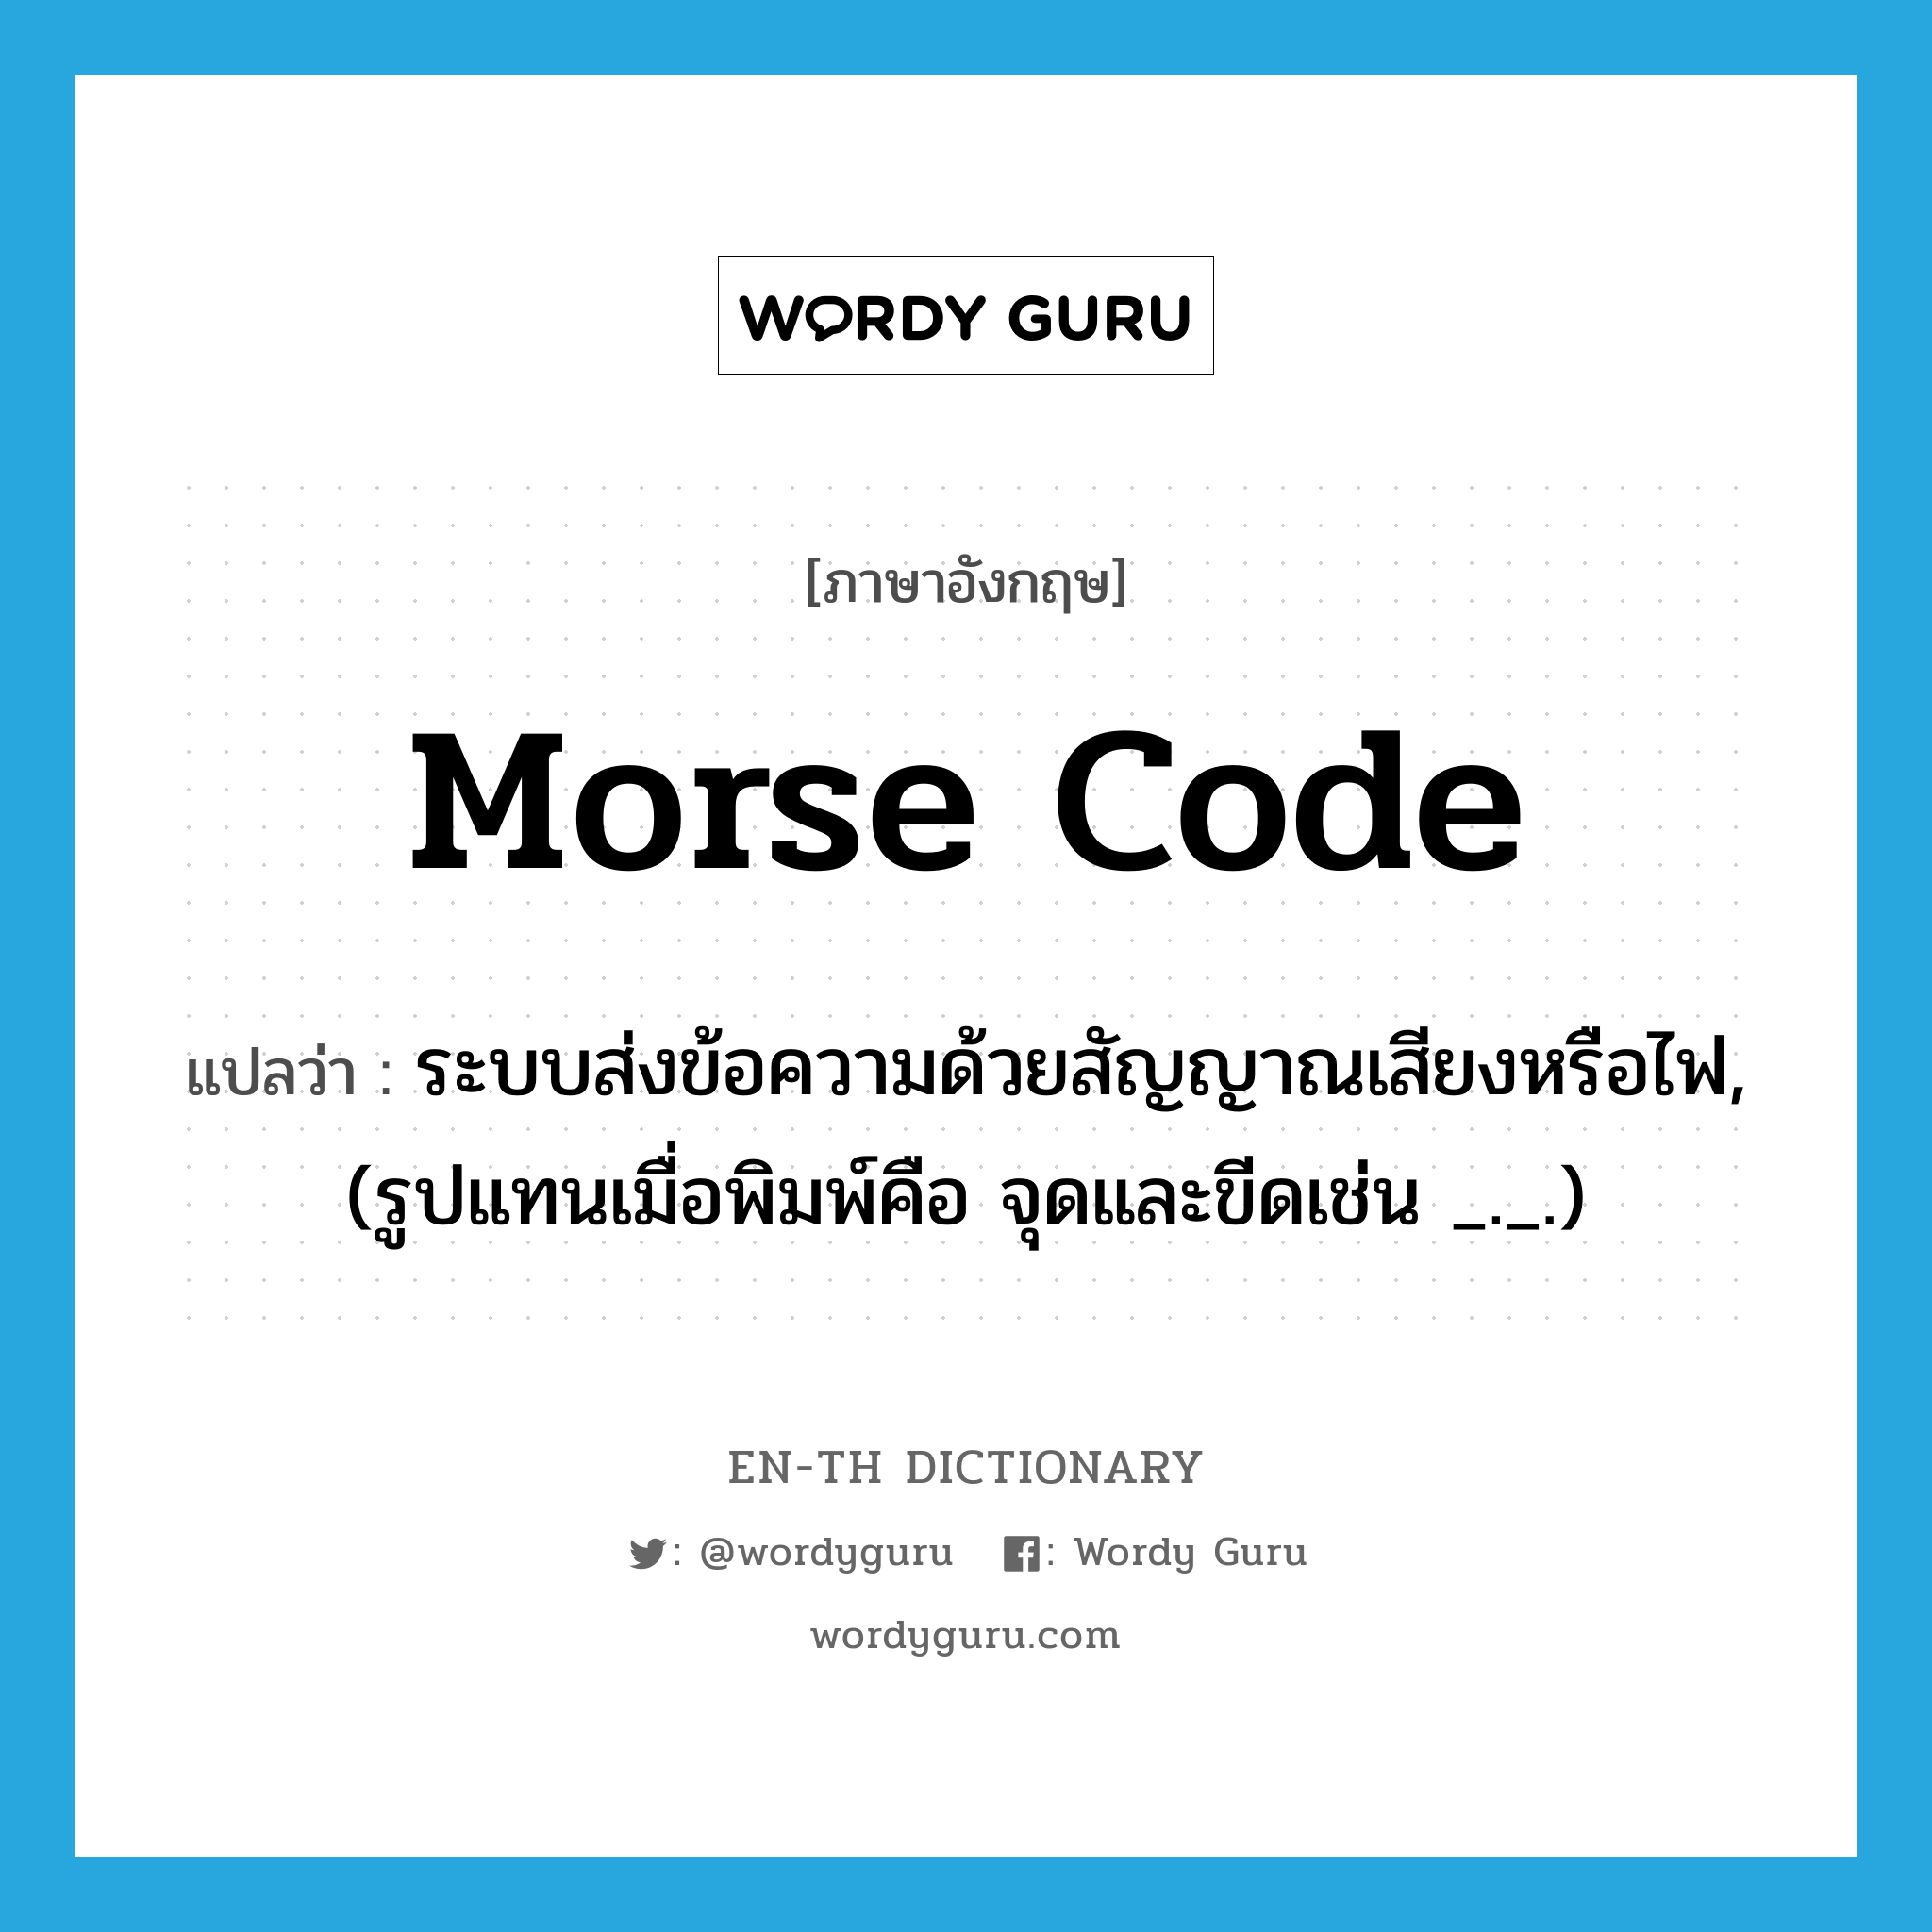 Morse code แปลว่า?, คำศัพท์ภาษาอังกฤษ Morse code แปลว่า ระบบส่งข้อความด้วยสัญญาณเสียงหรือไฟ, (รูปแทนเมื่อพิมพ์คือ จุดและขีดเช่น _._.) ประเภท N หมวด N